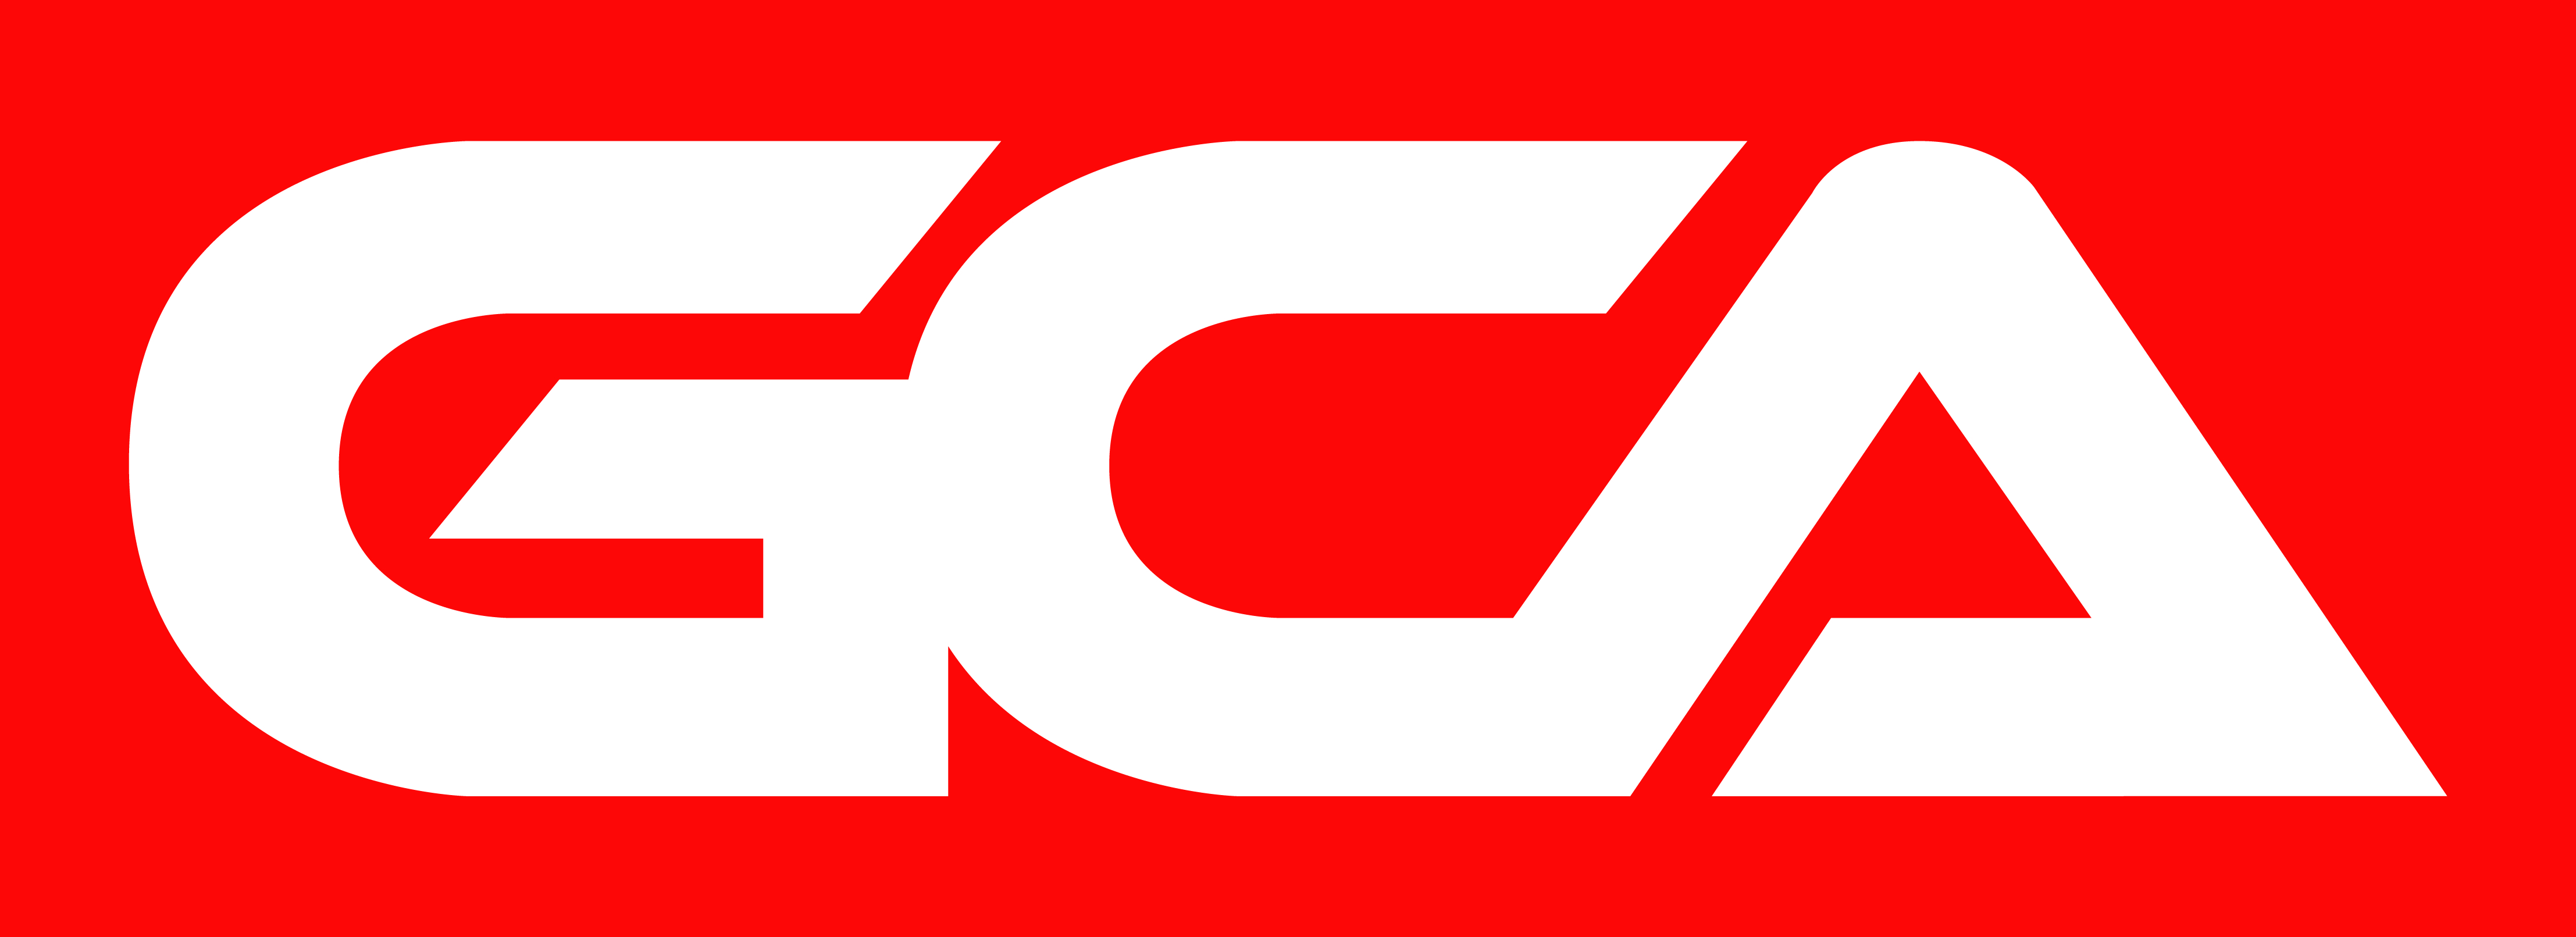 Logo_GCA.jpg